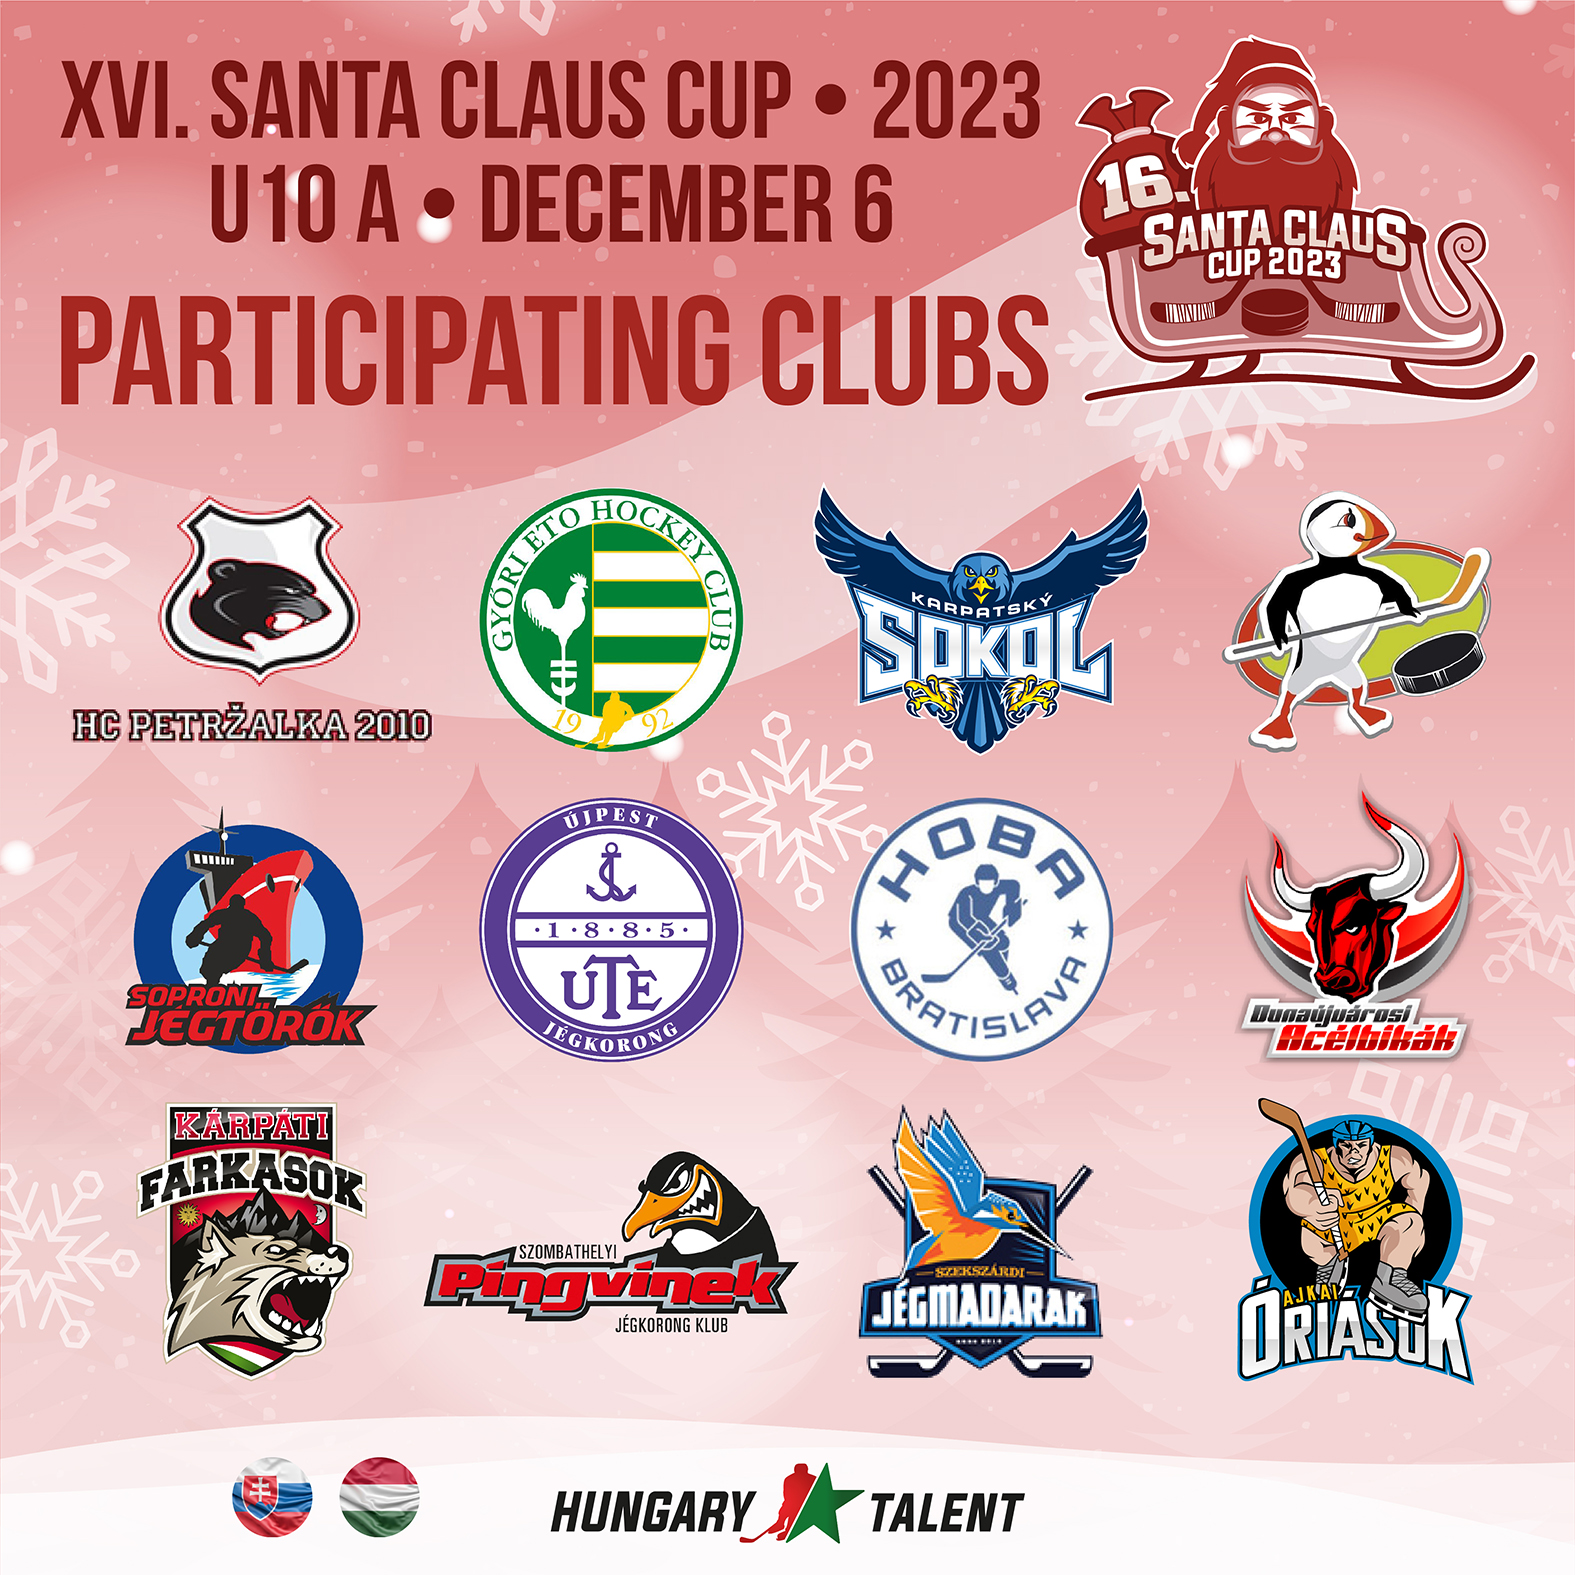 Predstavujeme 16. ročník turnaja Santa Claus Cupu A